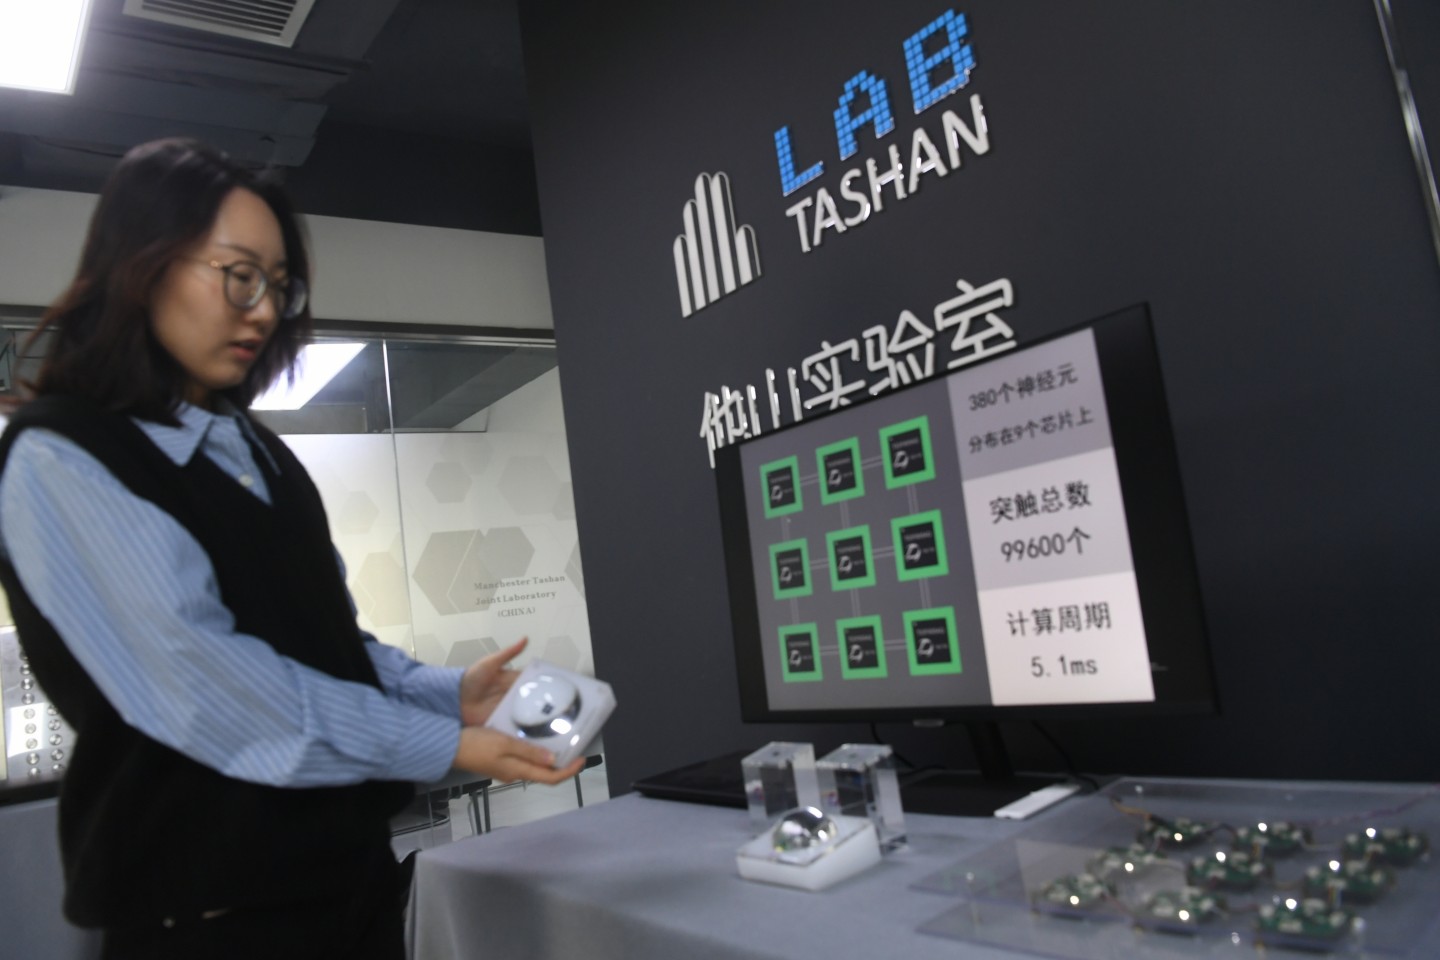 他山科技公司工作人员展示芯片。新京报记者 王颖 摄